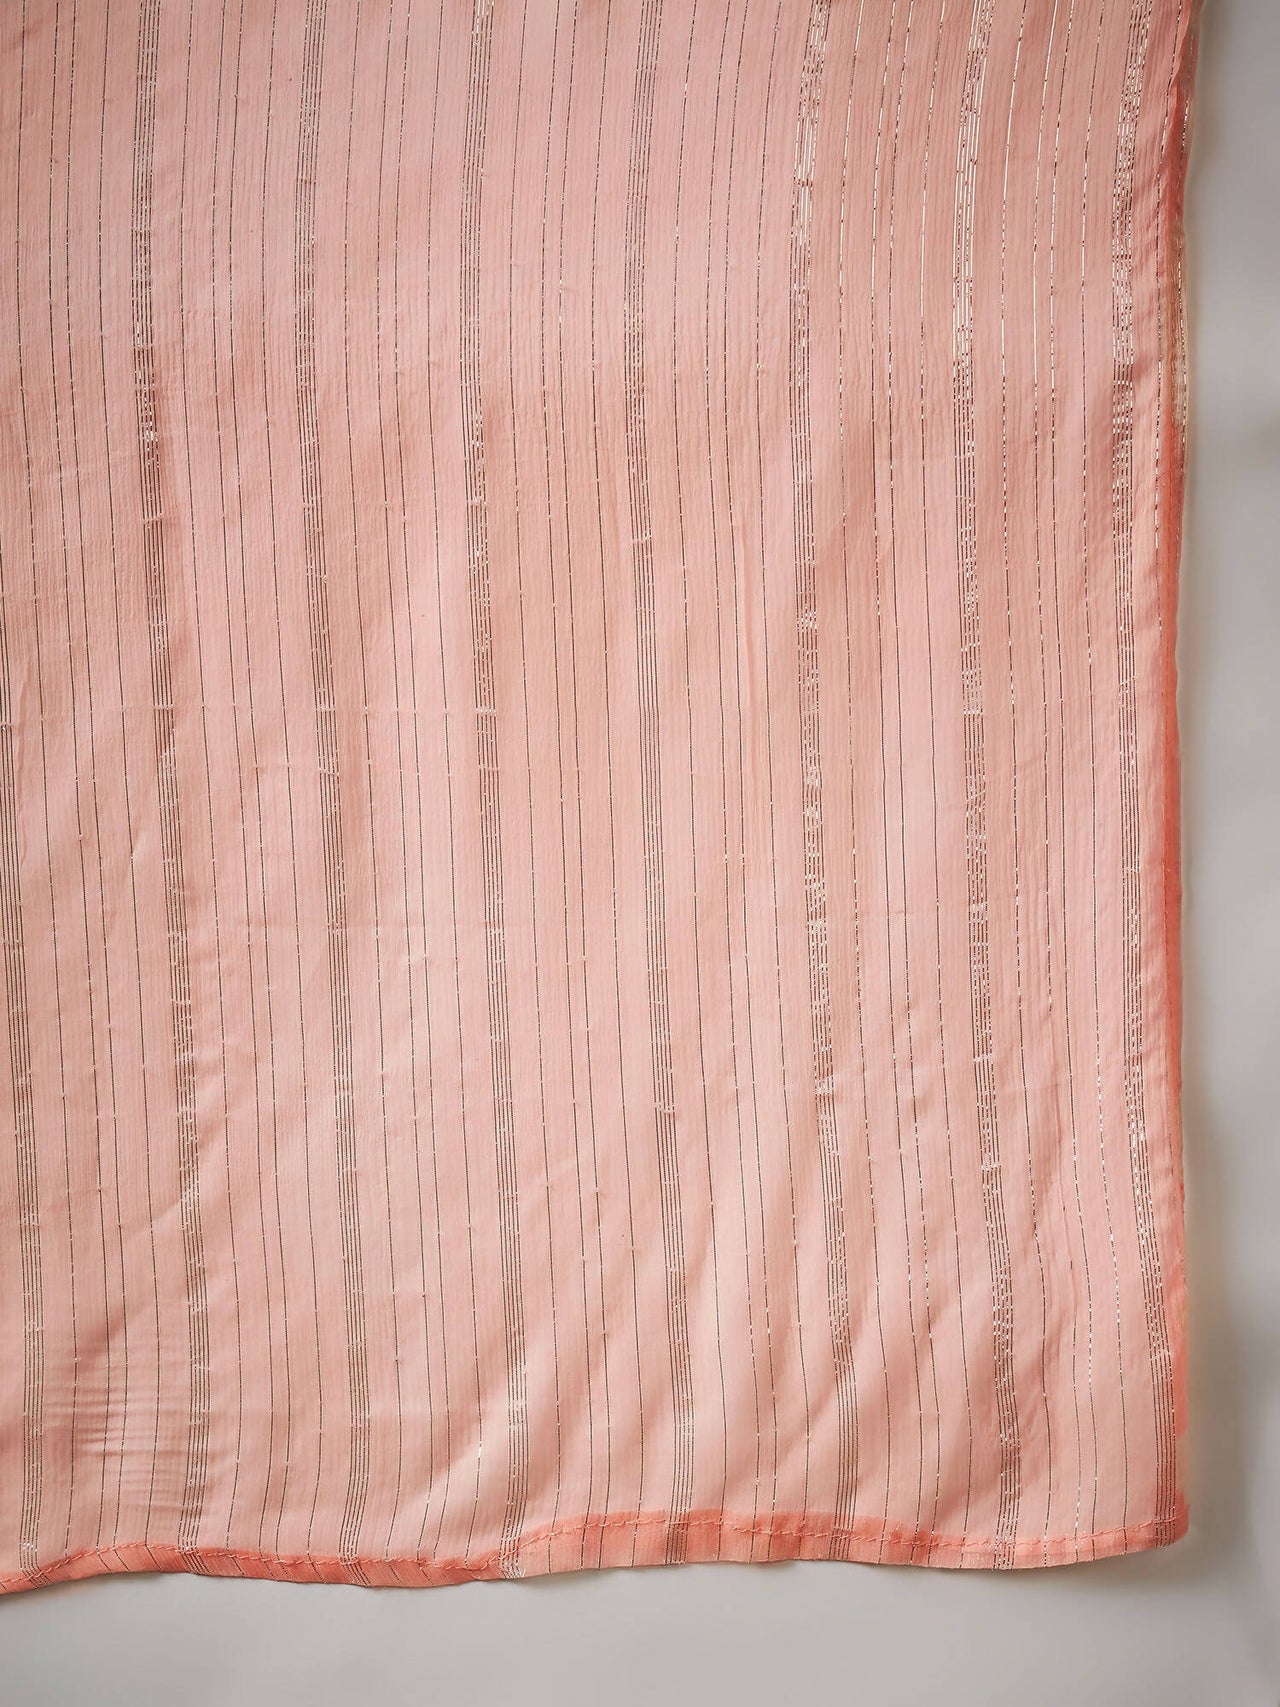 Peach Georgette Handwork Unstitched Dress Material - Hanika - Distacart